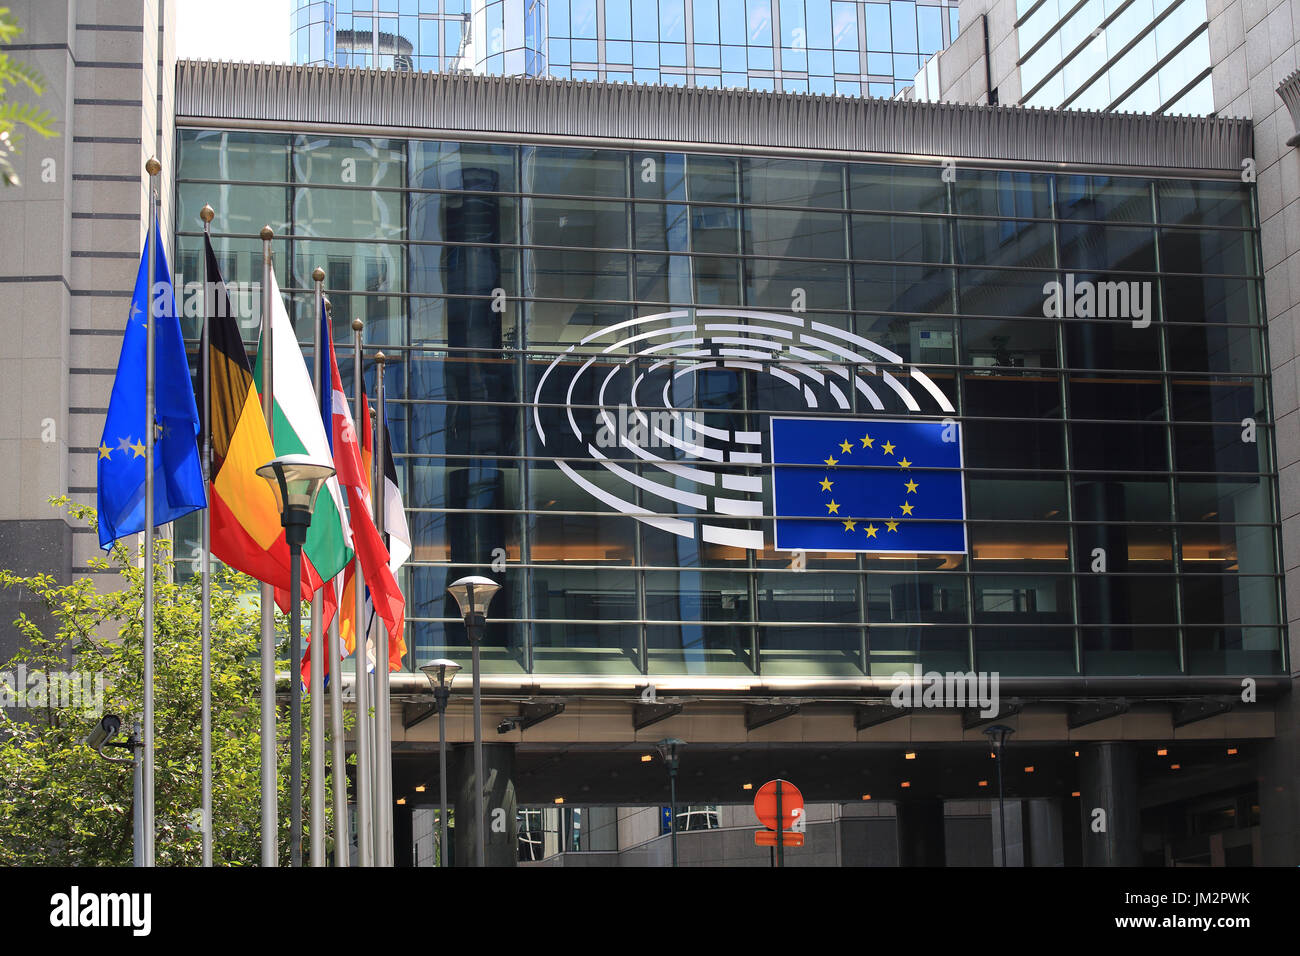 Bruxelles, Belgio - 17 Luglio 2017: Edificio del Parlamento europeo in una giornata di sole. Emblema del Parlamento europeo e nei paesi dell'UE bandiere. Foto Stock